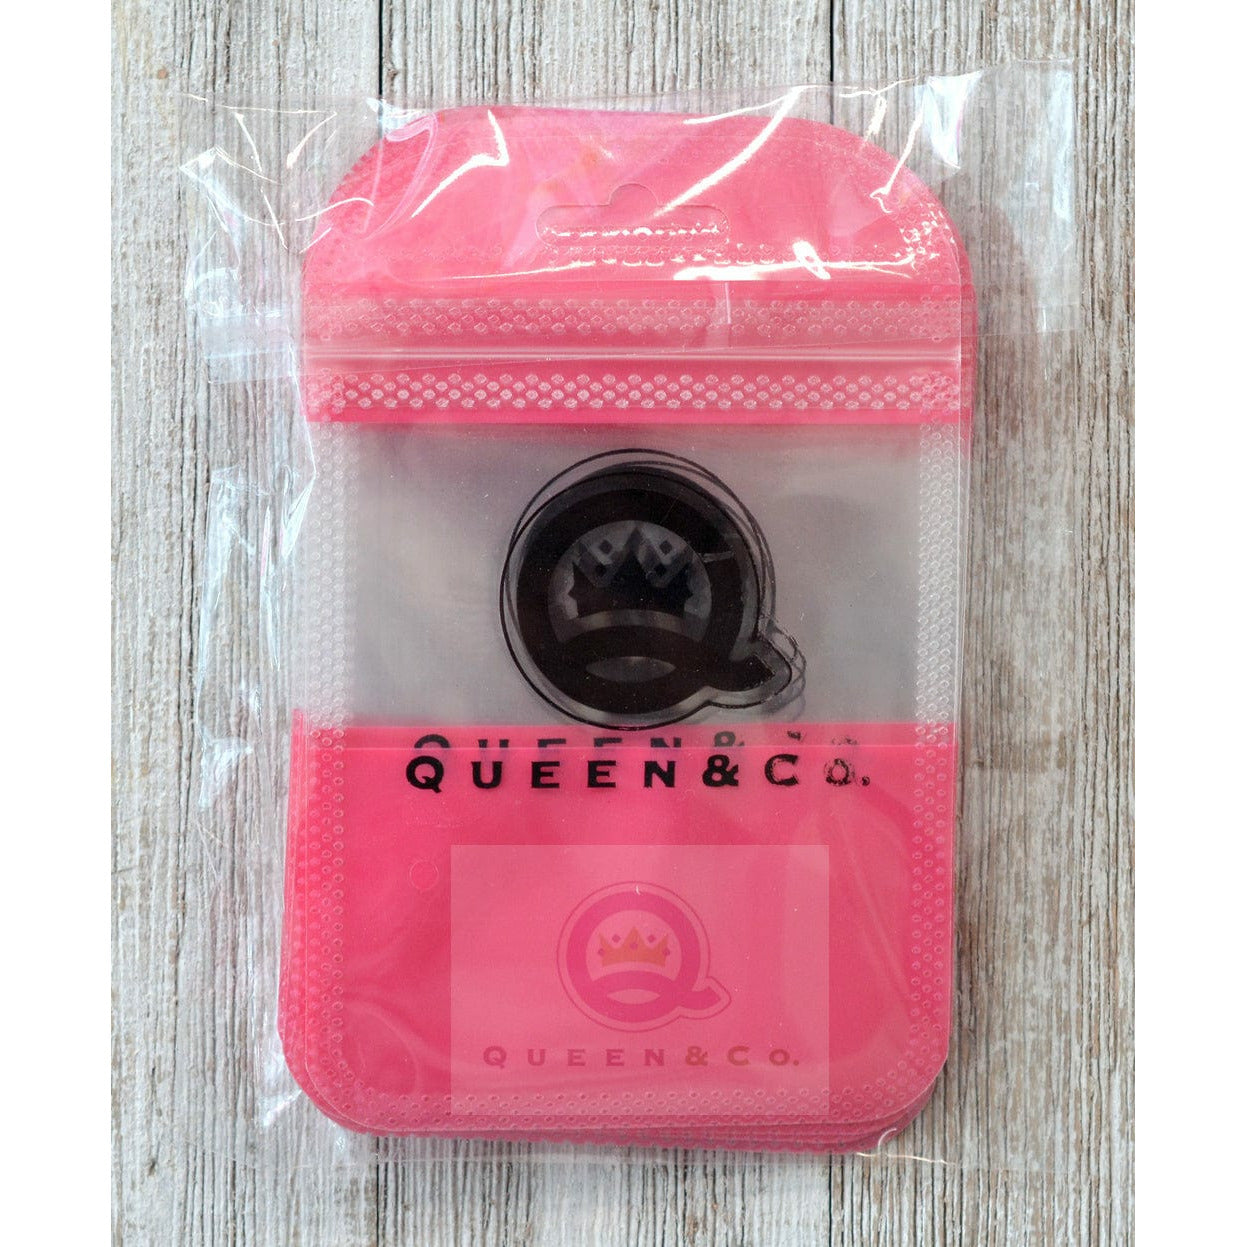 Queen & Co Zip Bags